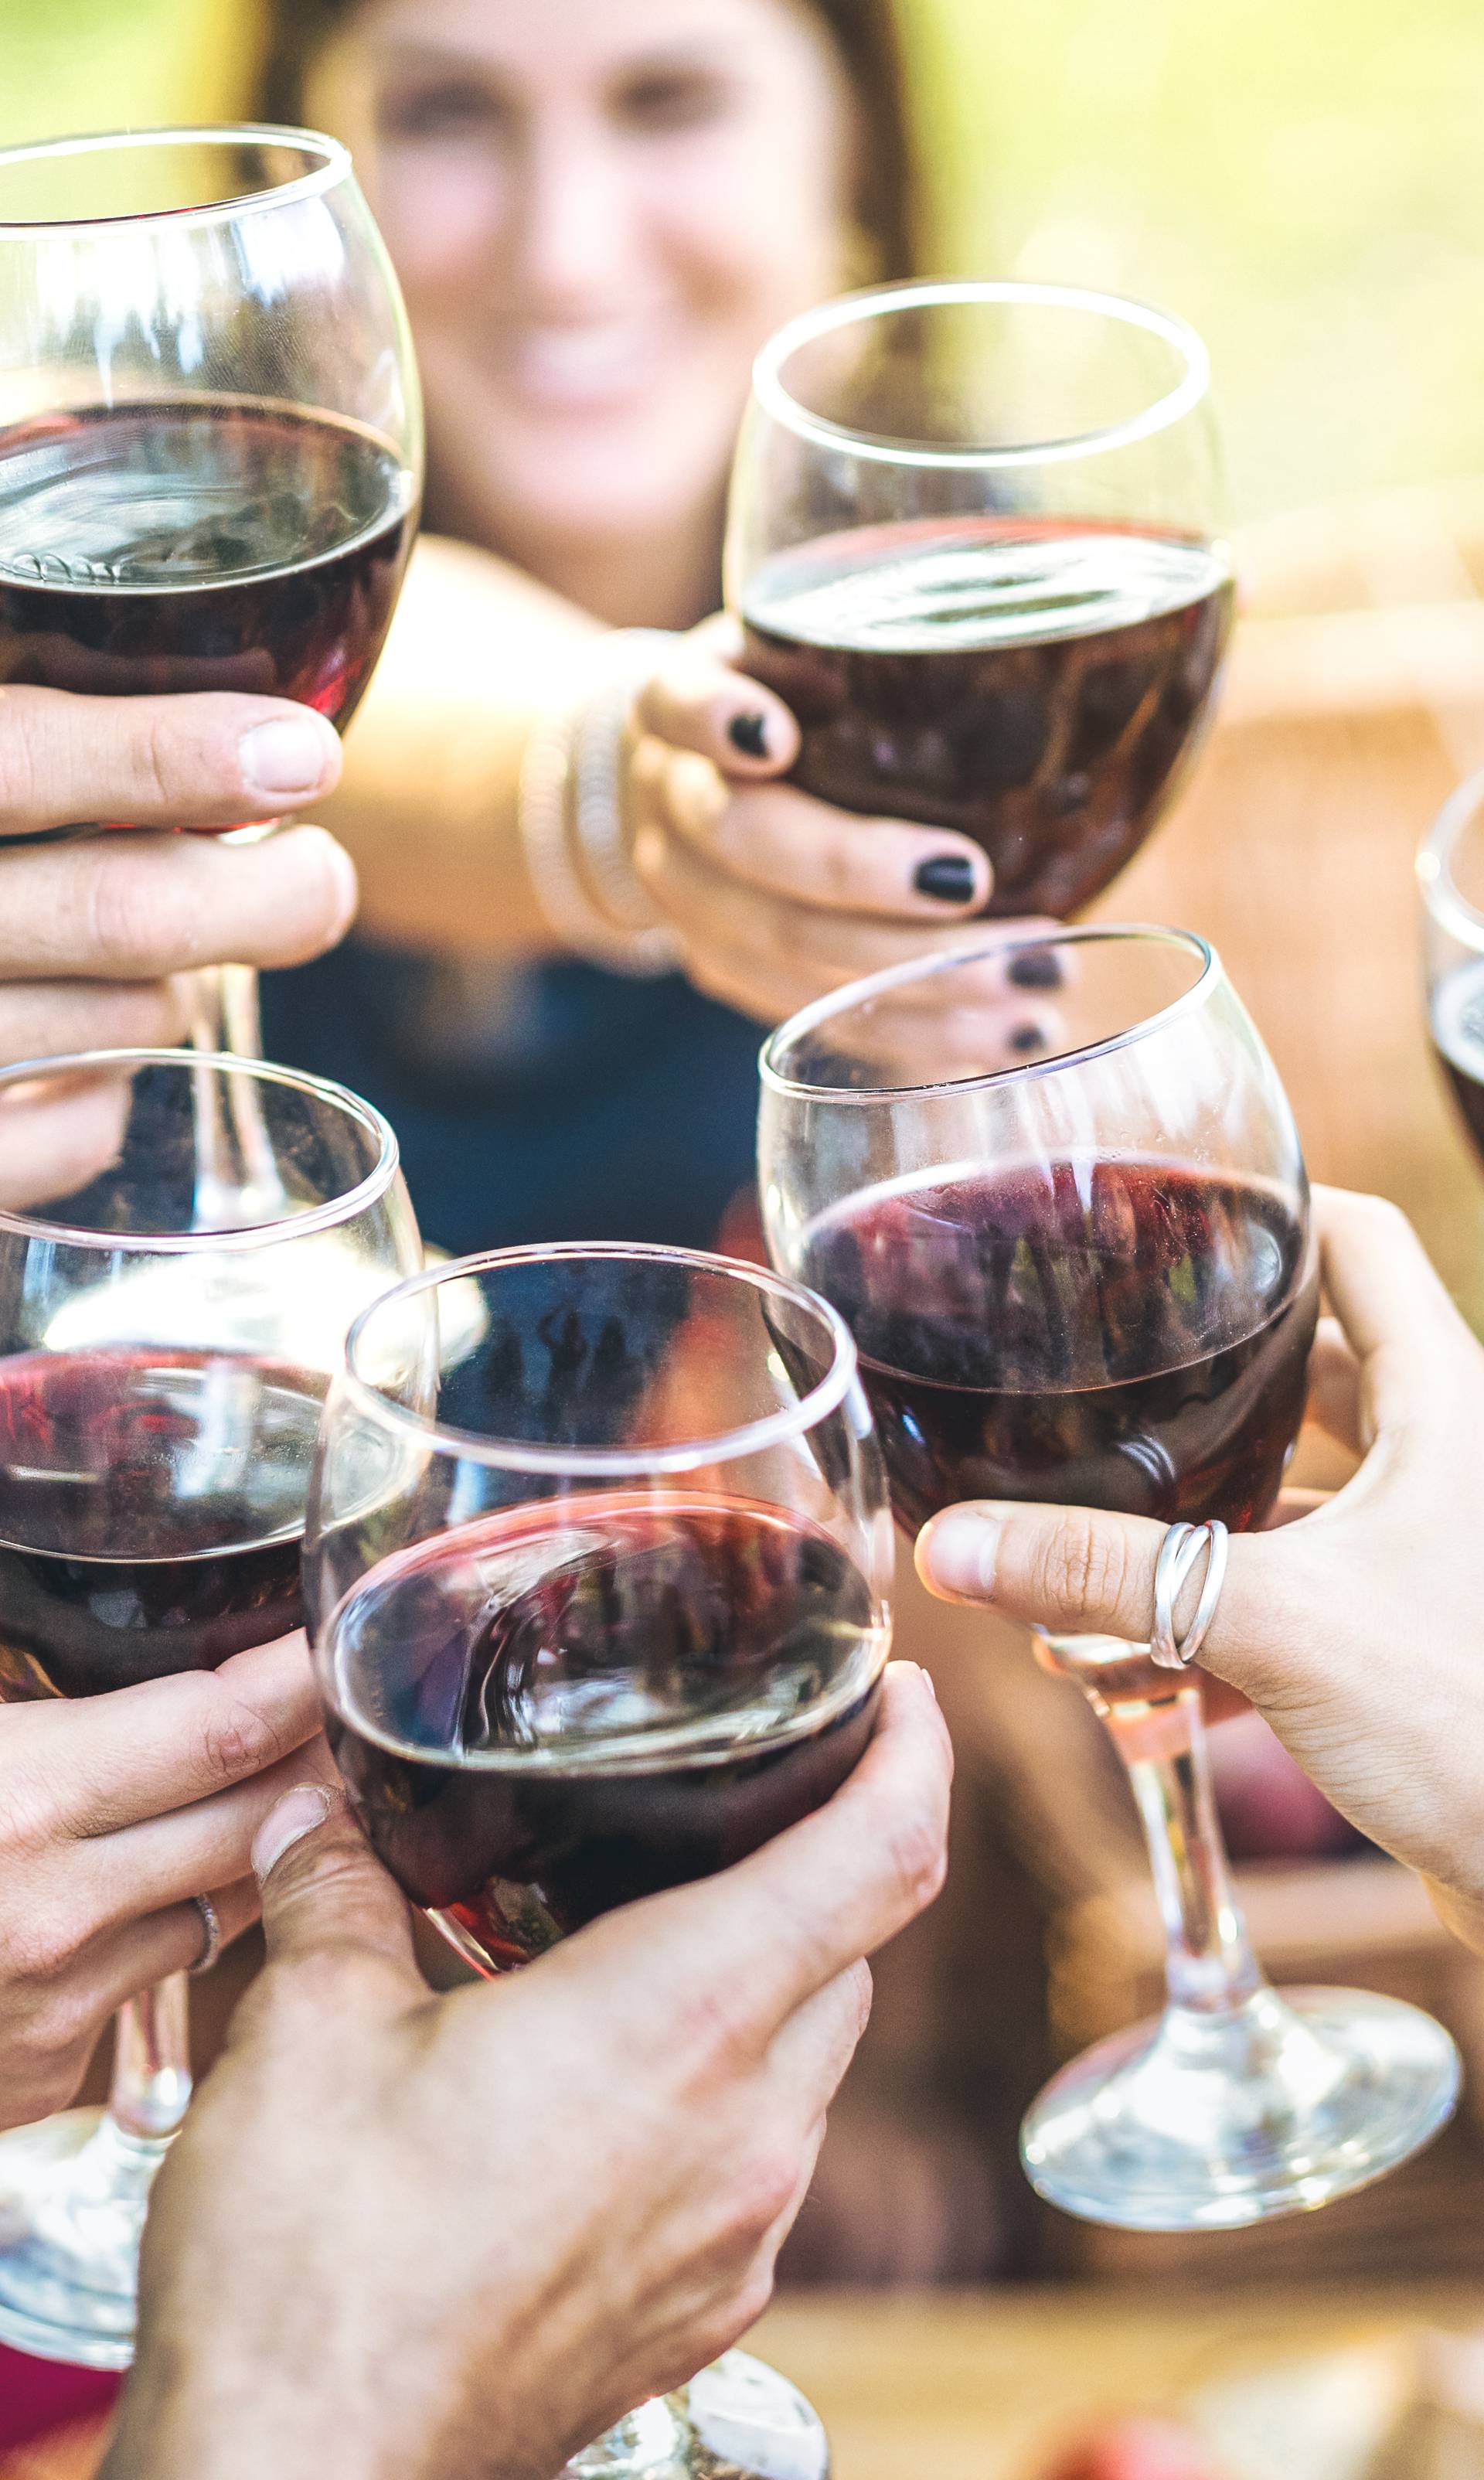 Prosječna potrošnja vina je 22 litre po stanovniku u Hrvatskoj